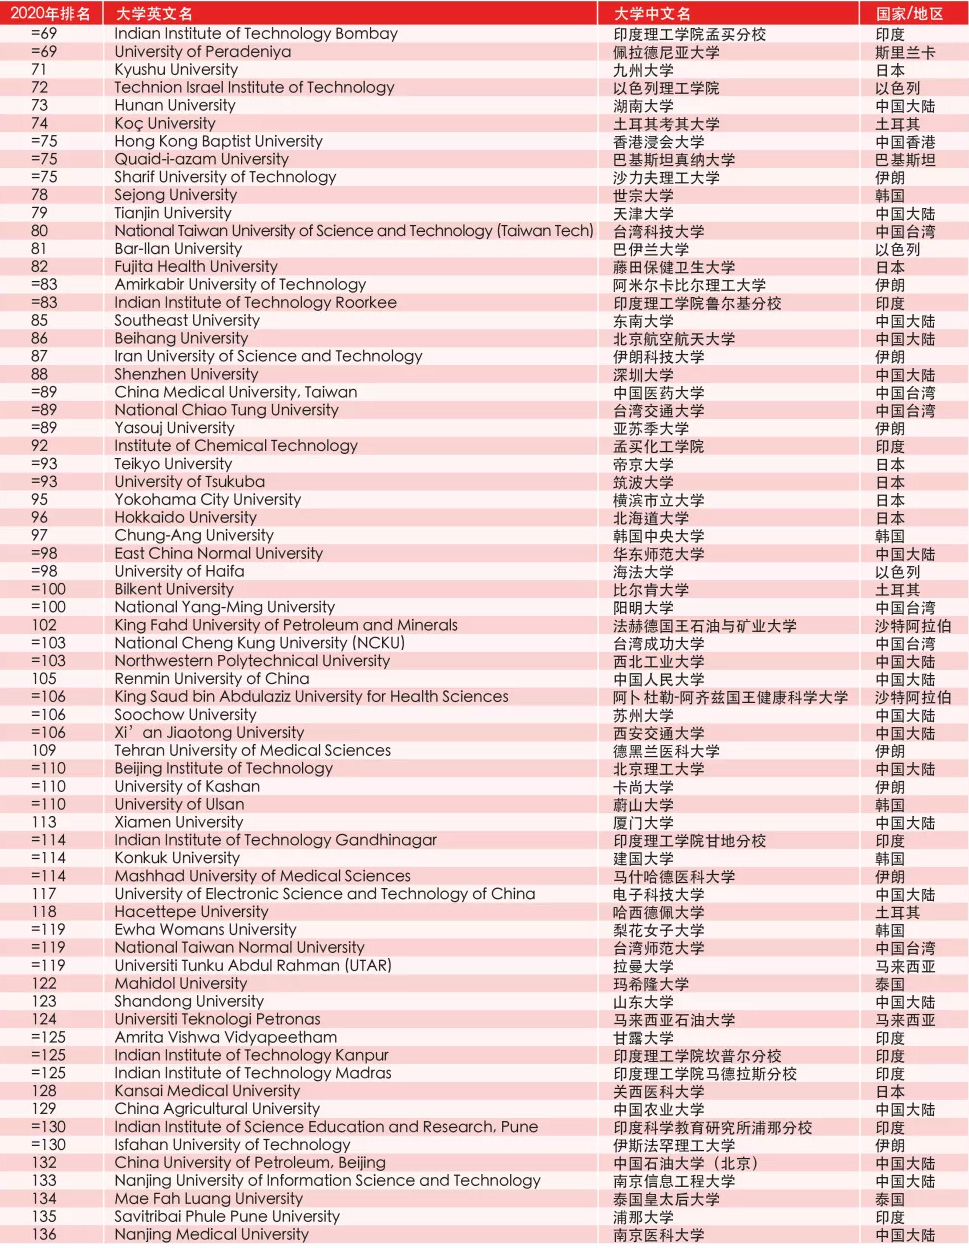 泰晤士2020亚洲大学排名发布 清华北大列前两位